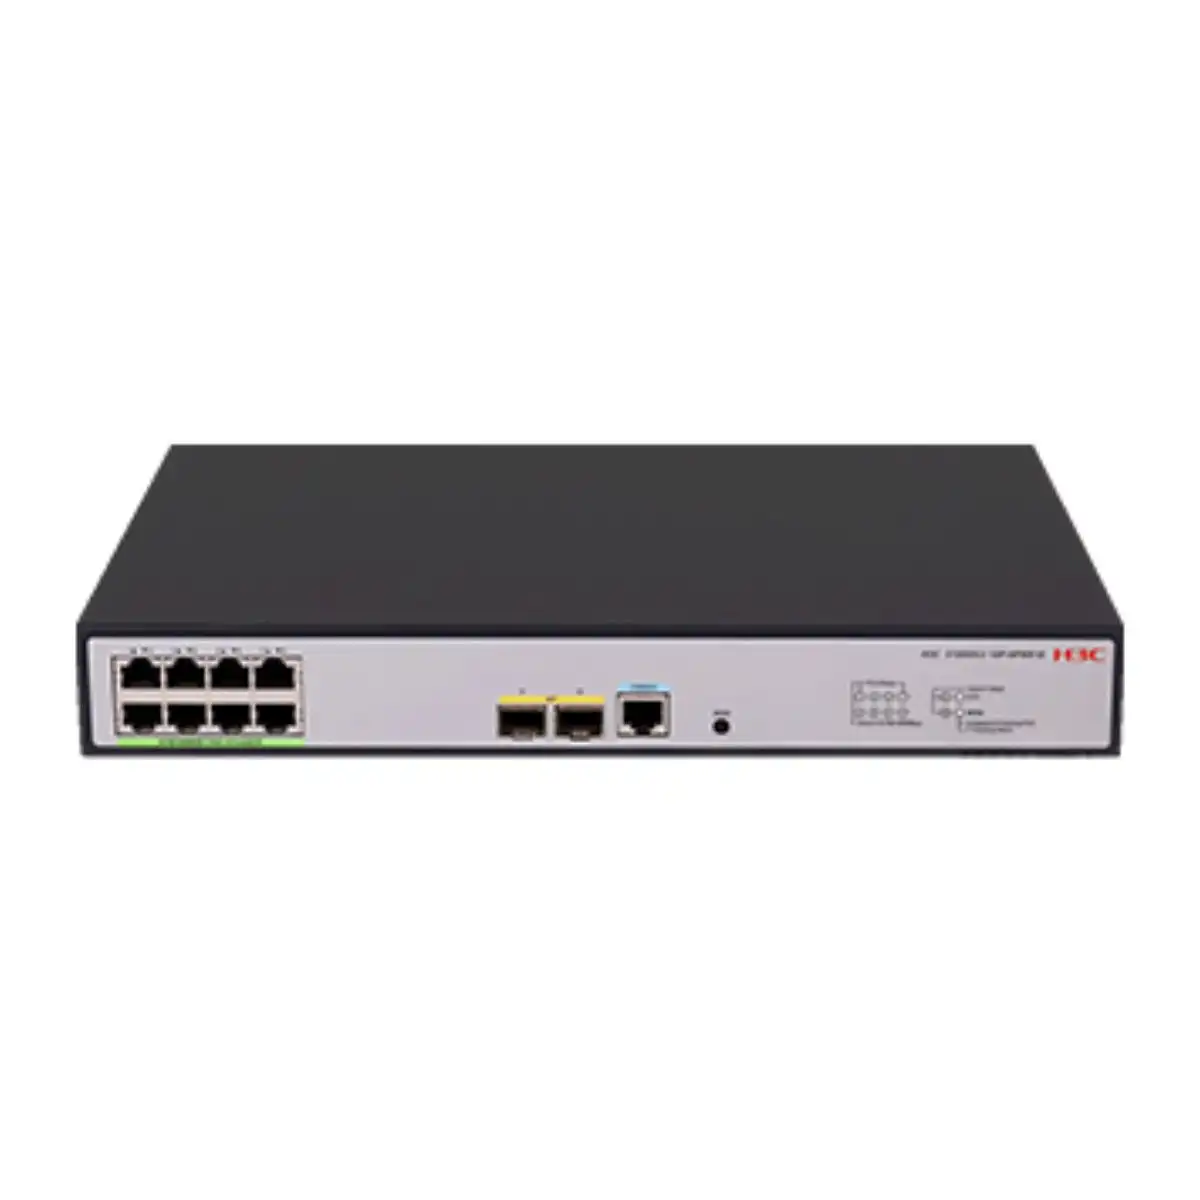 Switch 10 cổng Gigabit H3C S1850v2-10P-EI 8 cổng 10/100/1000Base-T, 2 cổng quang  SFP